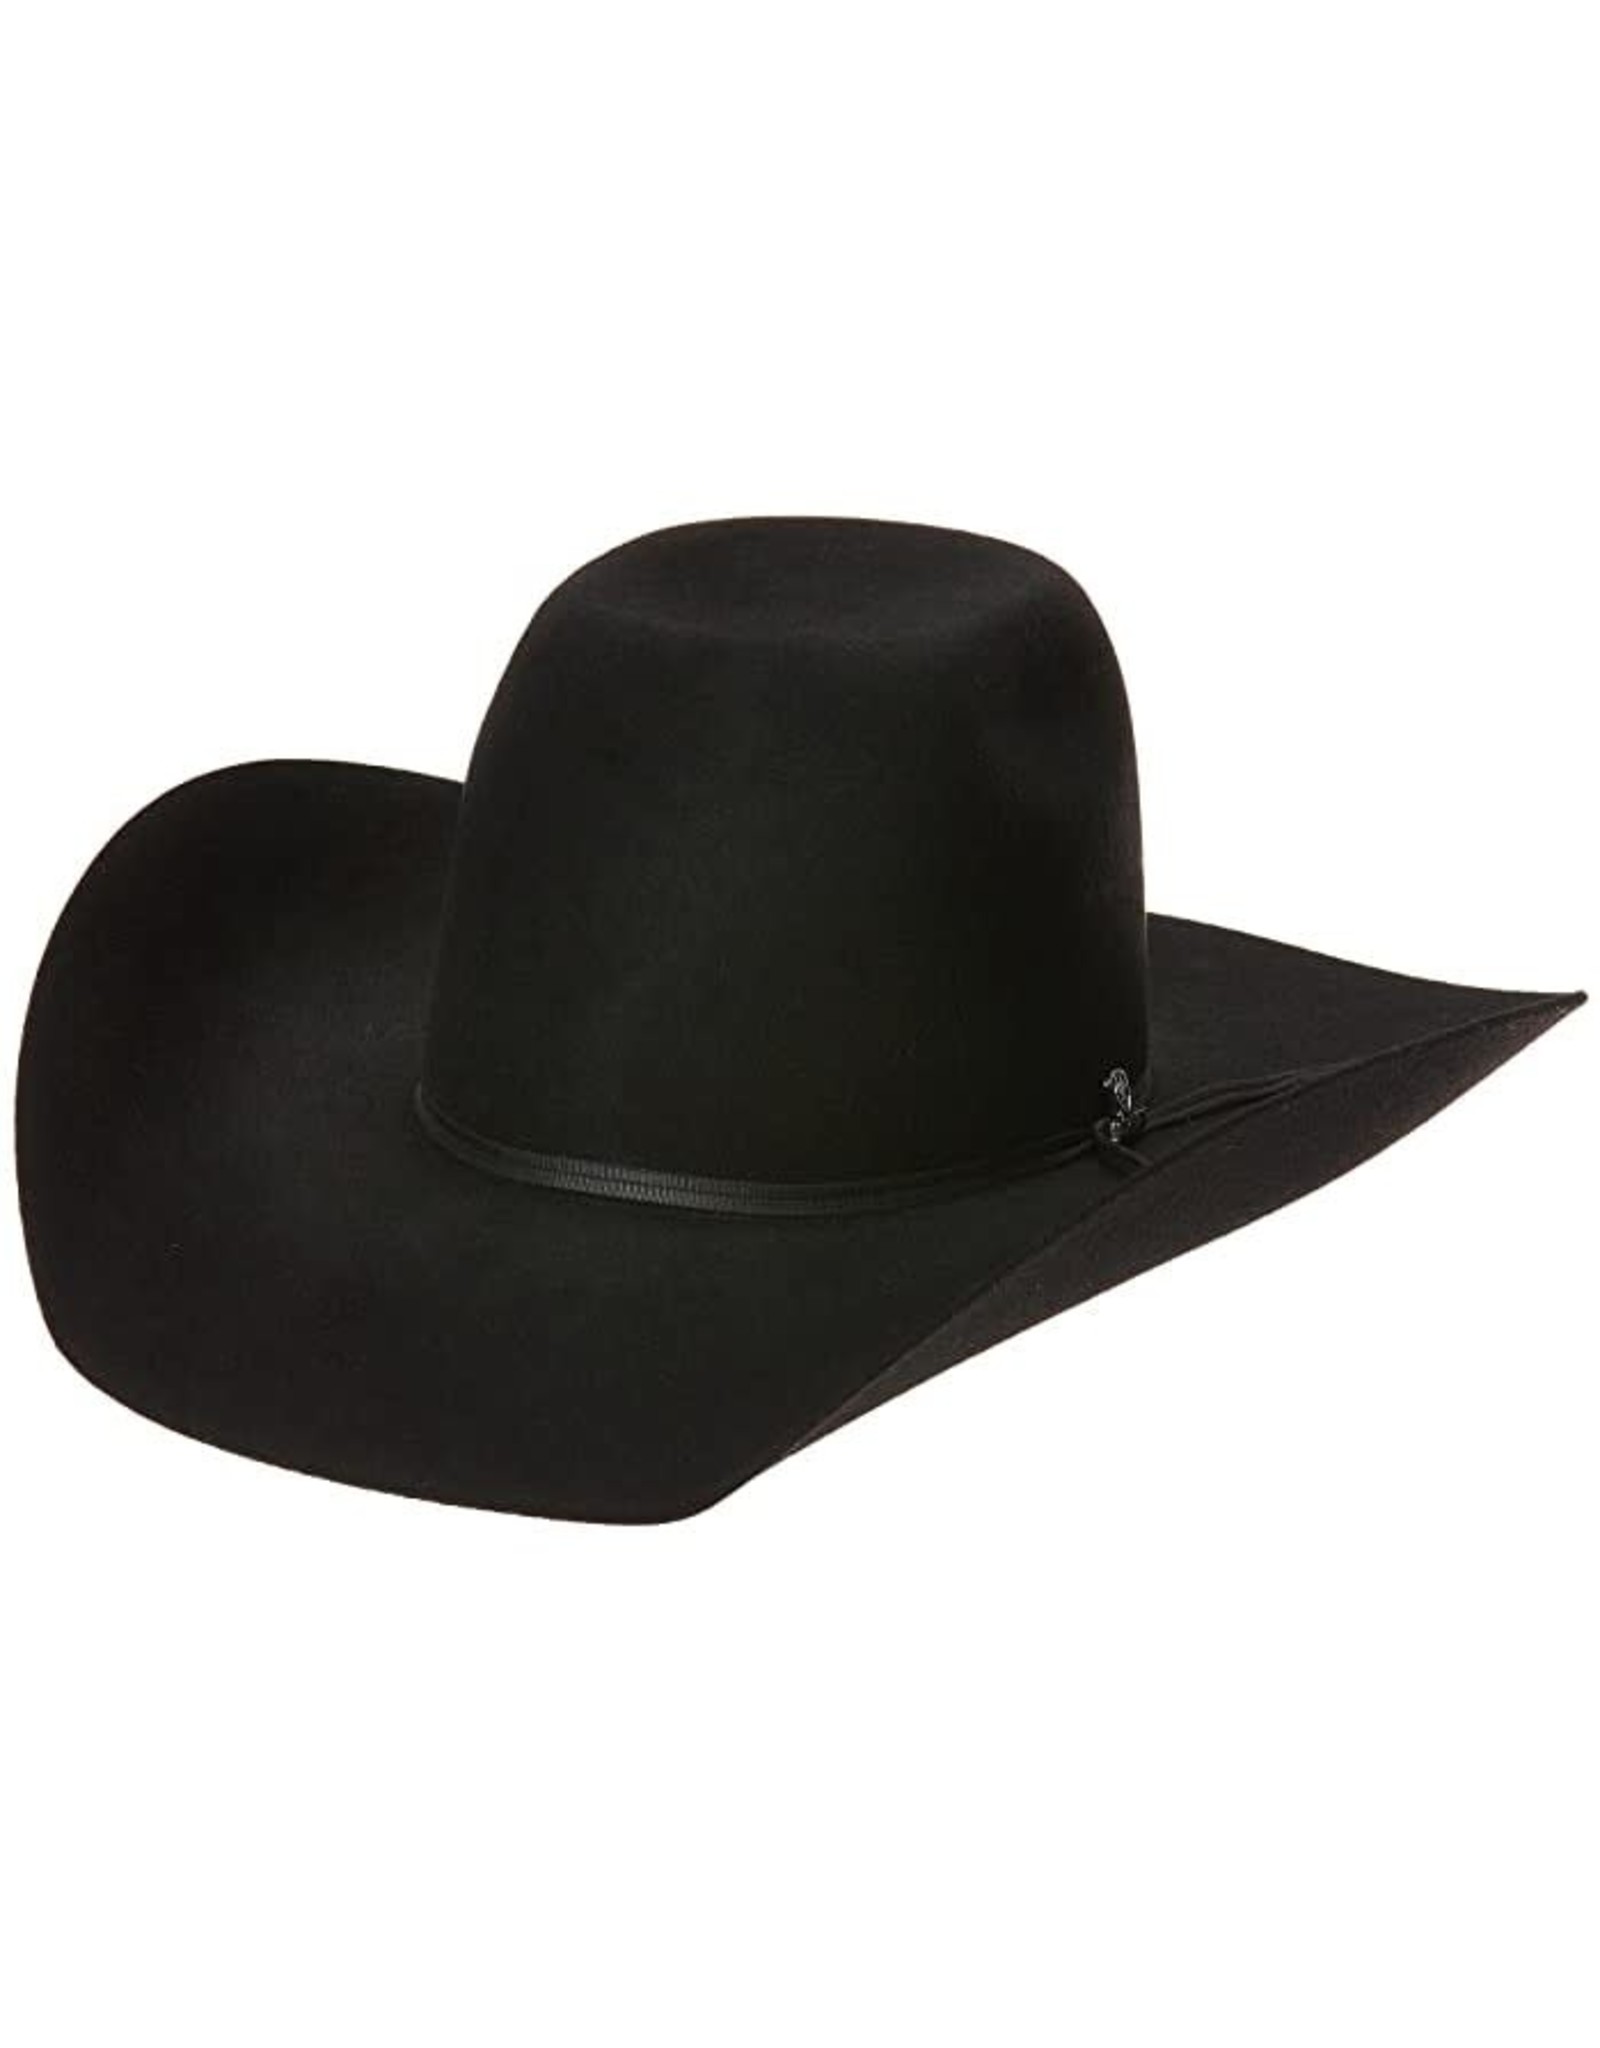 Ariat Black Bull Rider Wool Felt Cowboy Hat A7520401